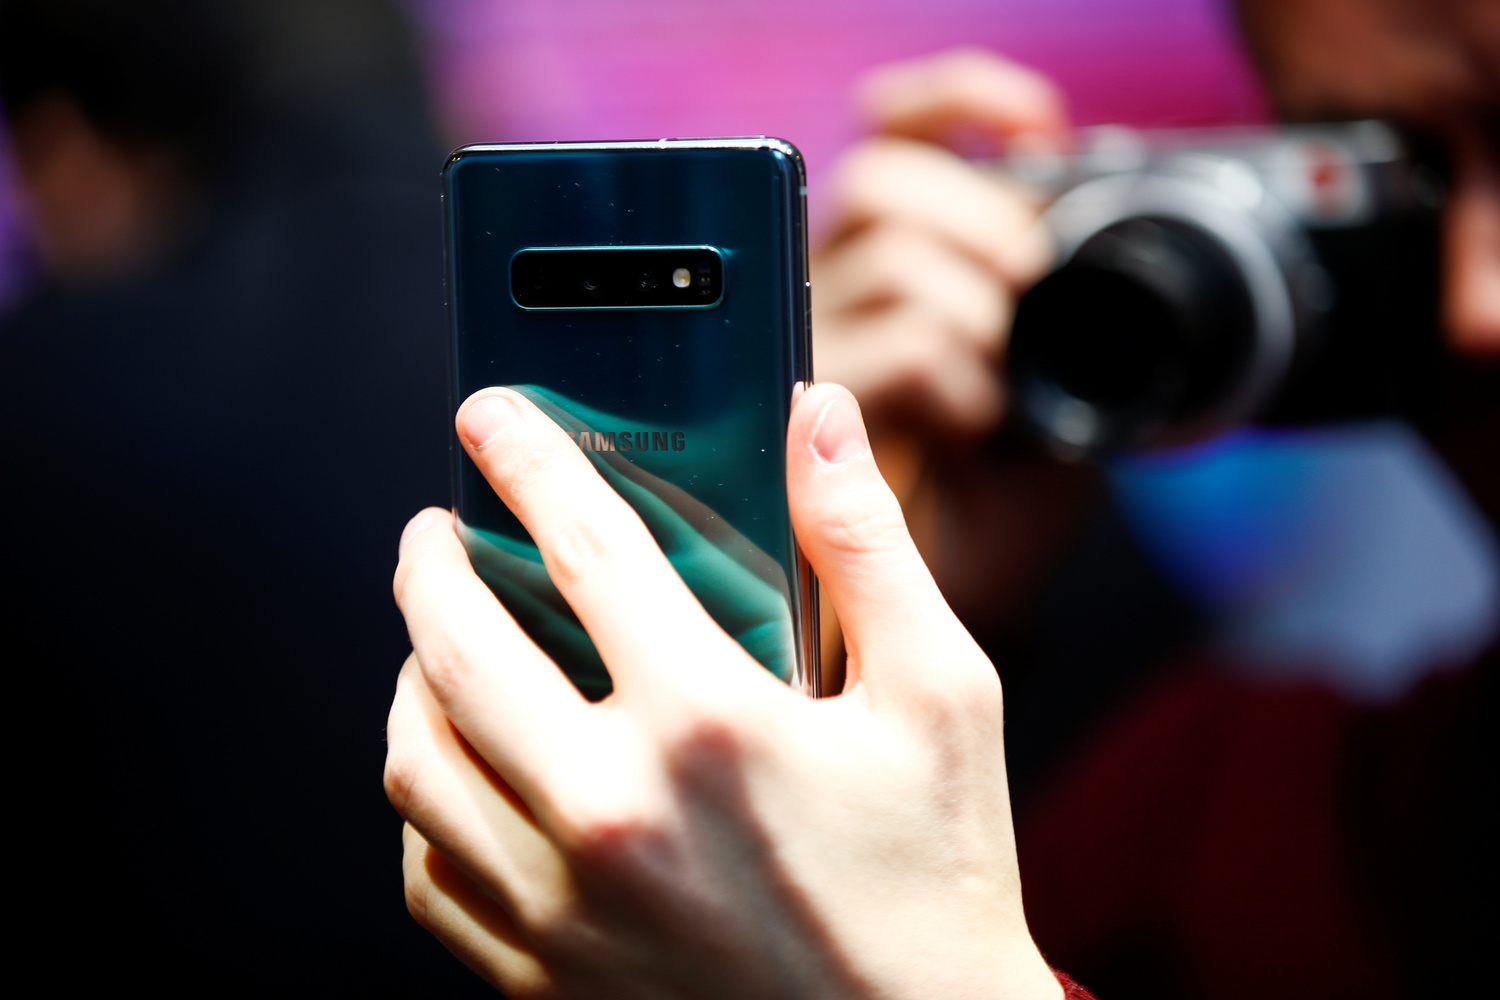 Un giornalista fotografa il nuovo smartphone Samsung Galaxy S10e in un evento stampa a Londra, in Gran Bretagna, 20 febbraio 2019. REUTERS/Henry Nicholls